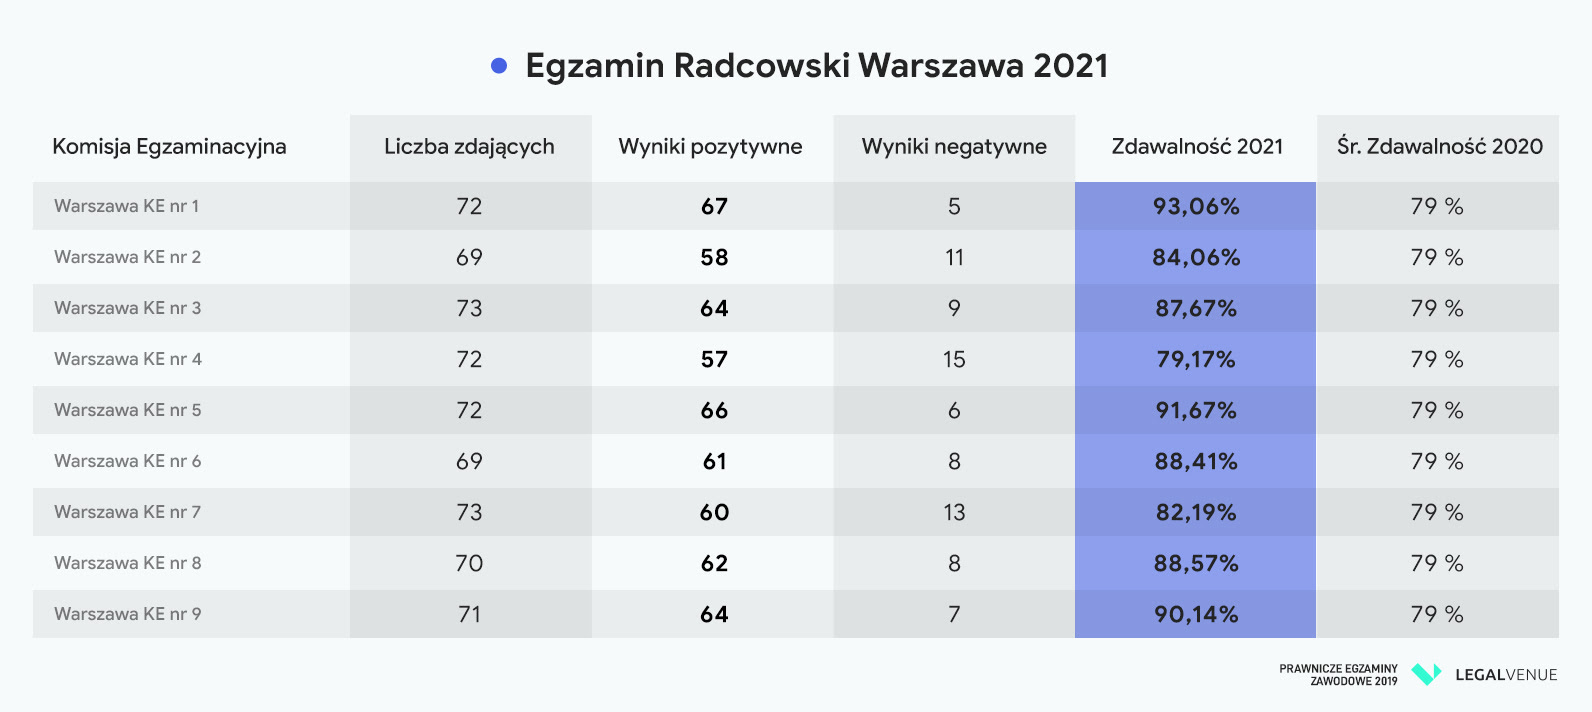 egzamin adwokacki egzamin radcowski 2020 2021 wyniki warszawa